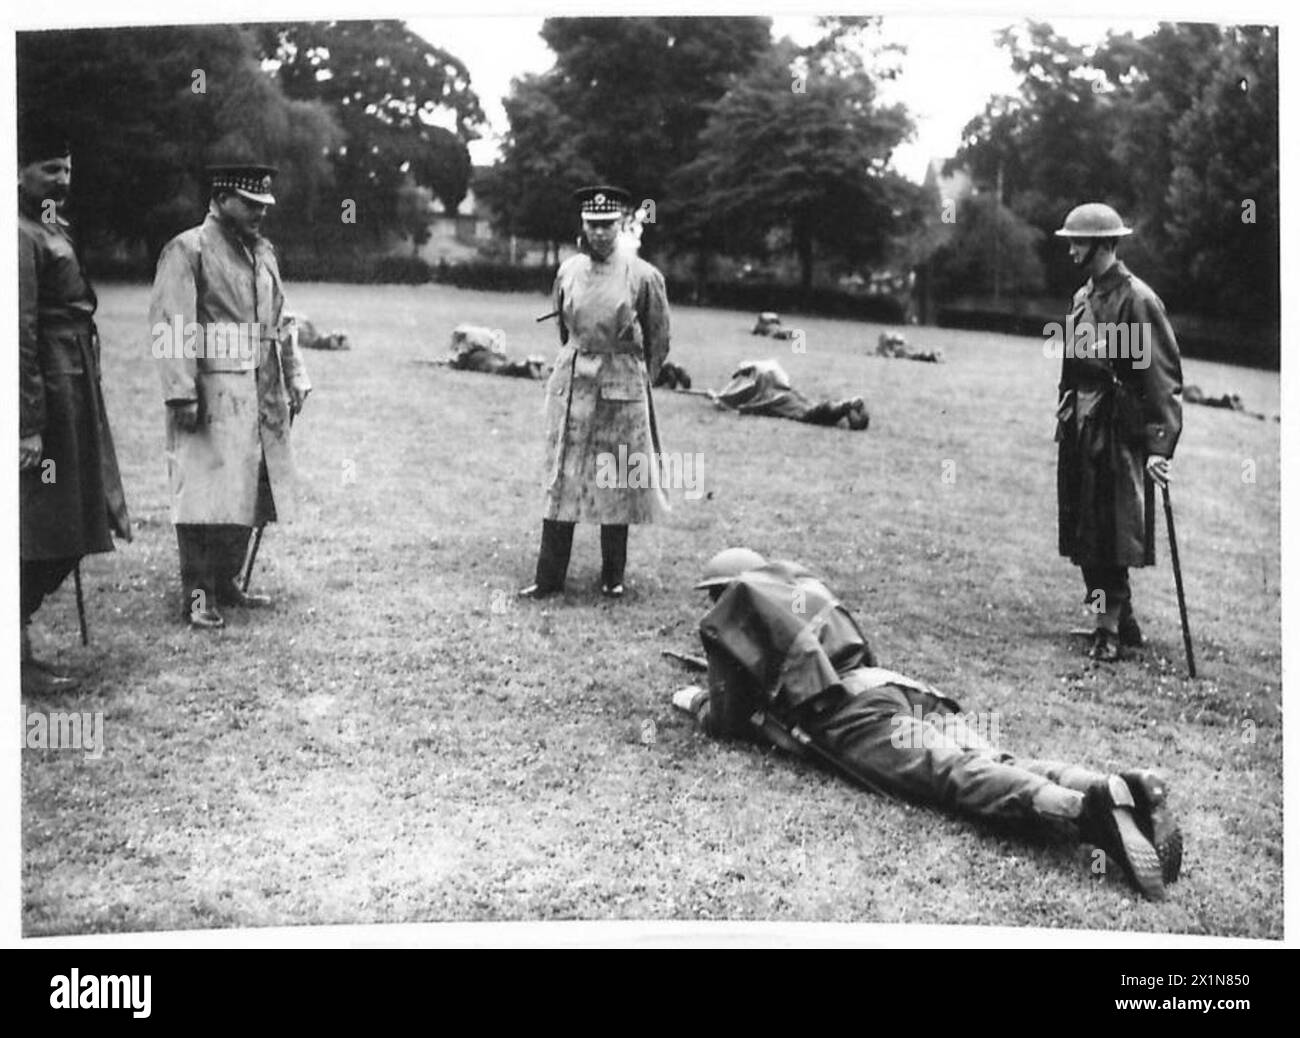 DER KÖNIG INSPIZIERT VORSTÄDTE VON LONDON - seine Majestät beobachtet Männer des 1. Bataillons der Scots Guards, die in einem South London Park in Norwood, British Army, trainiert werden Stockfoto